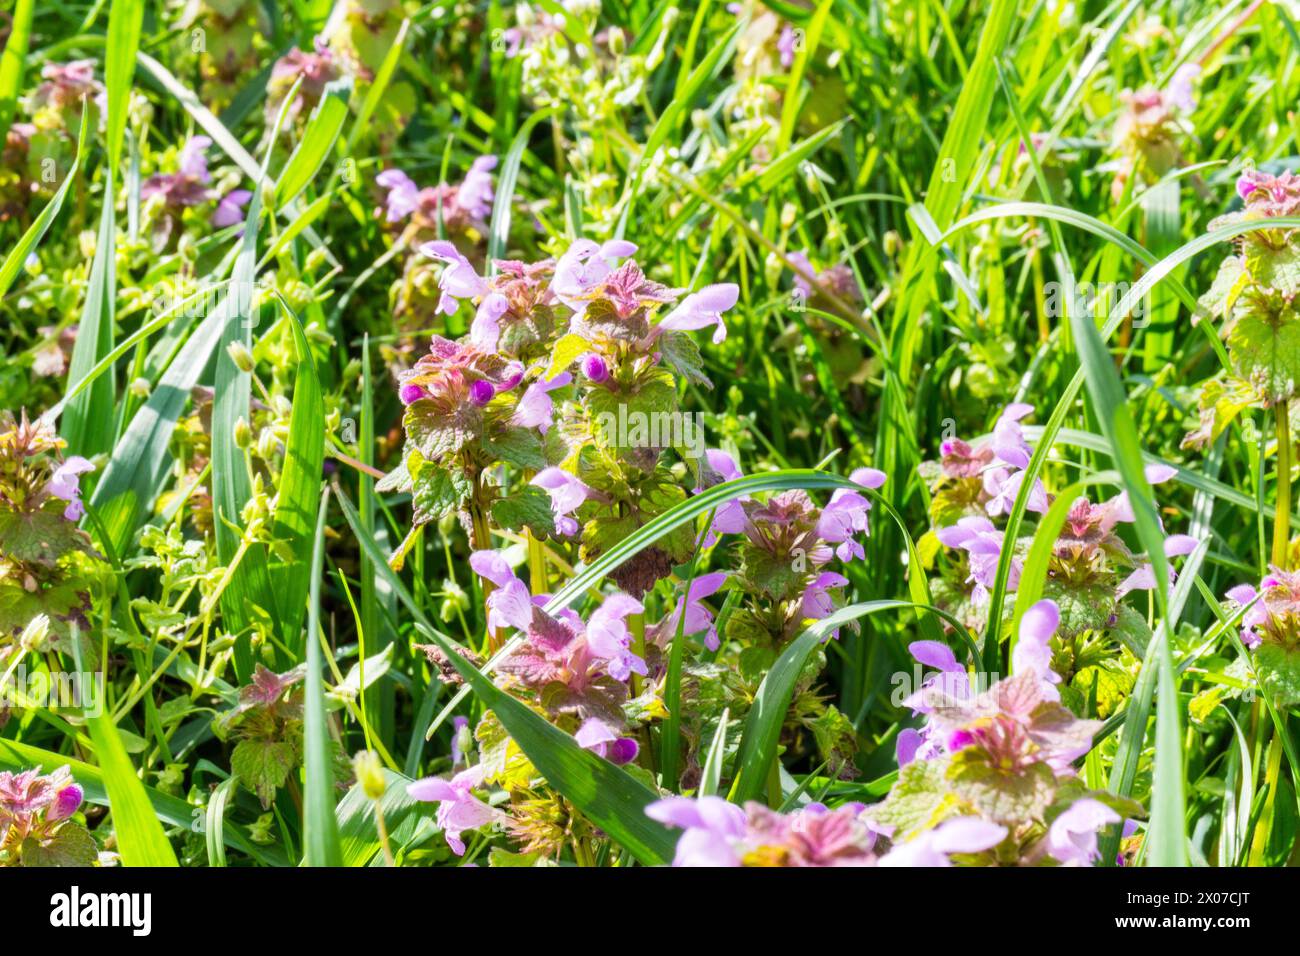 Lamium (dead-nettles) flowering in spring April, Hungary Stock Photo